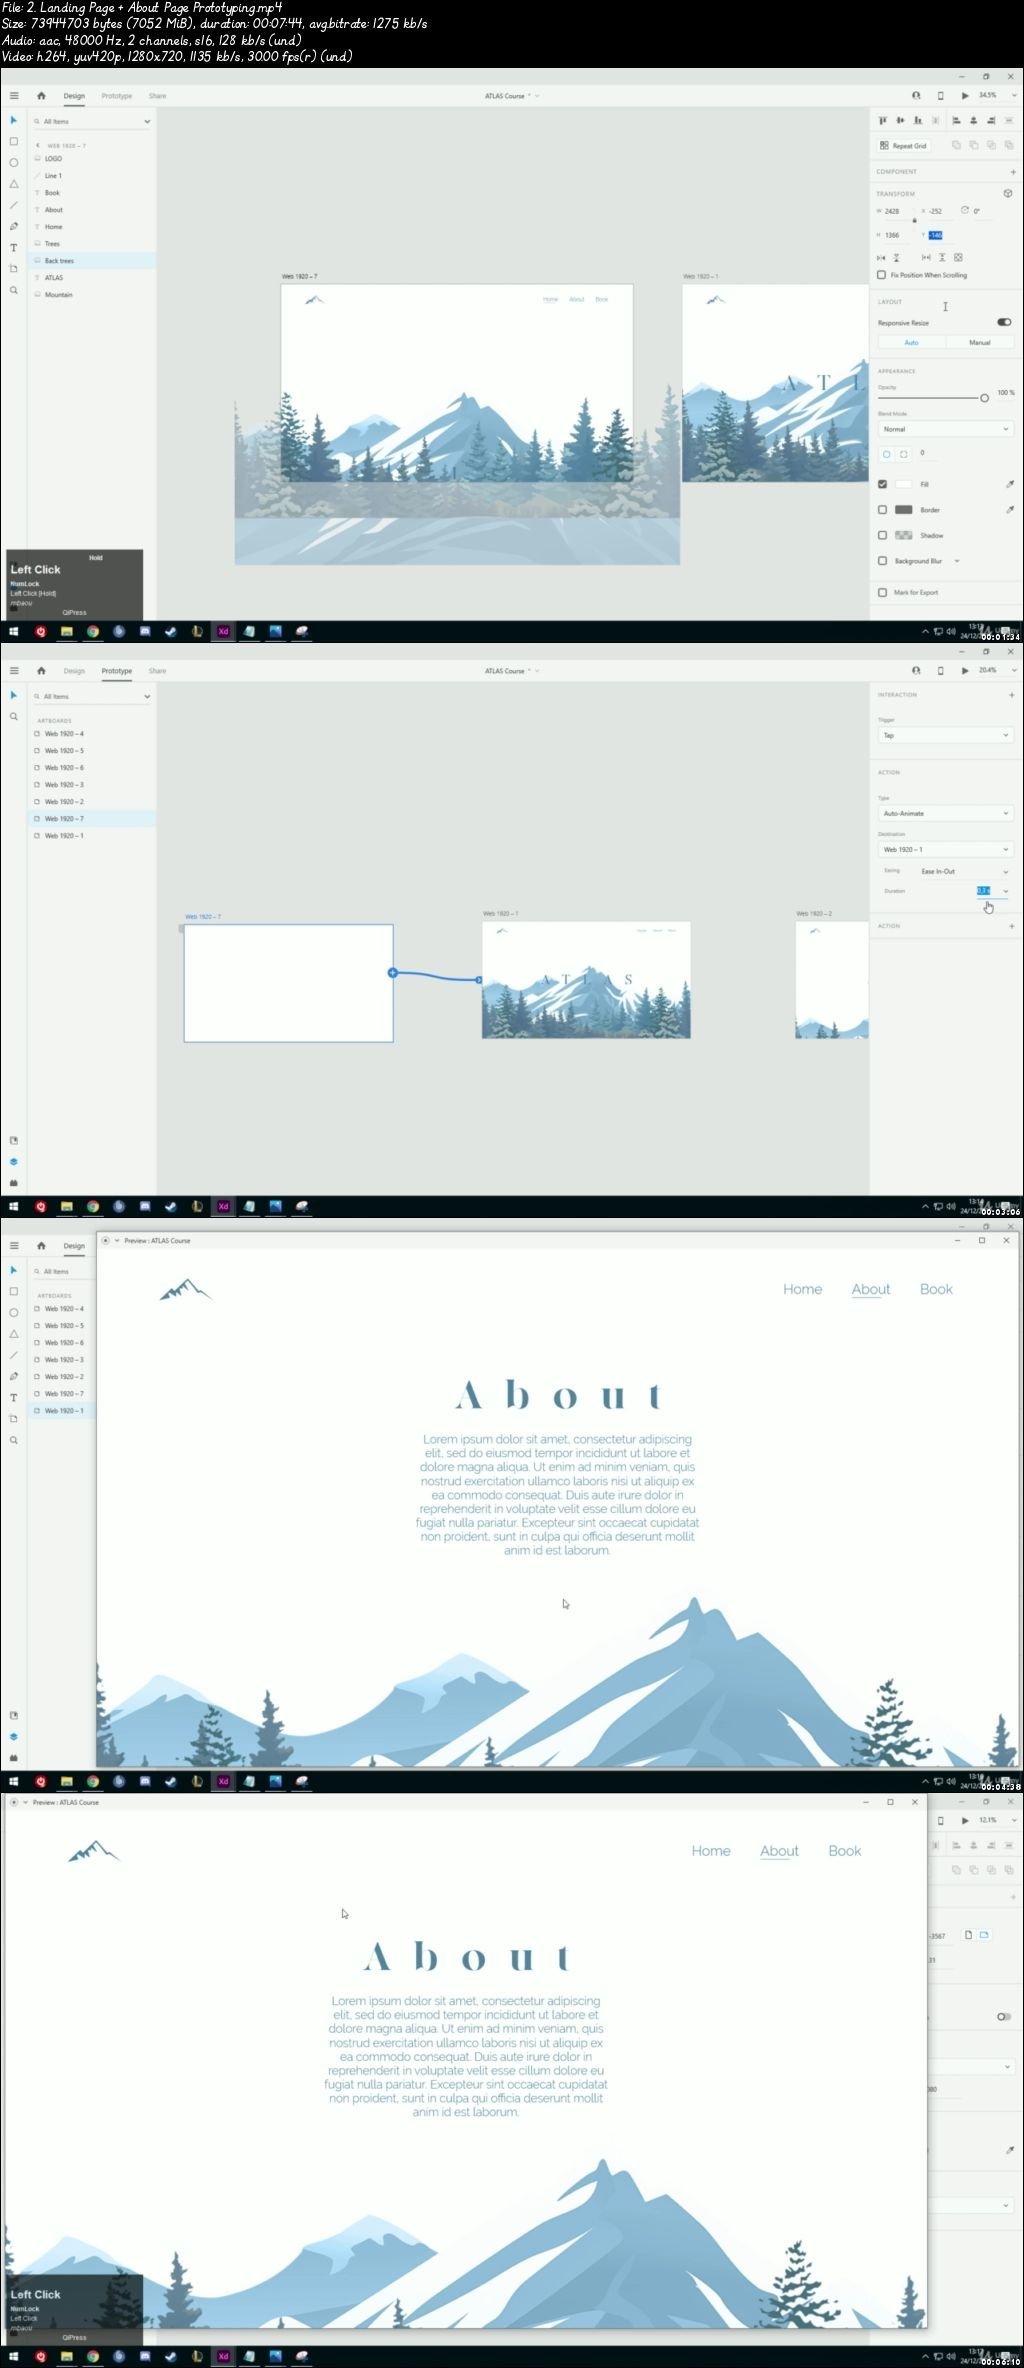  UI/UX Design - Adobe XD From Scratch 